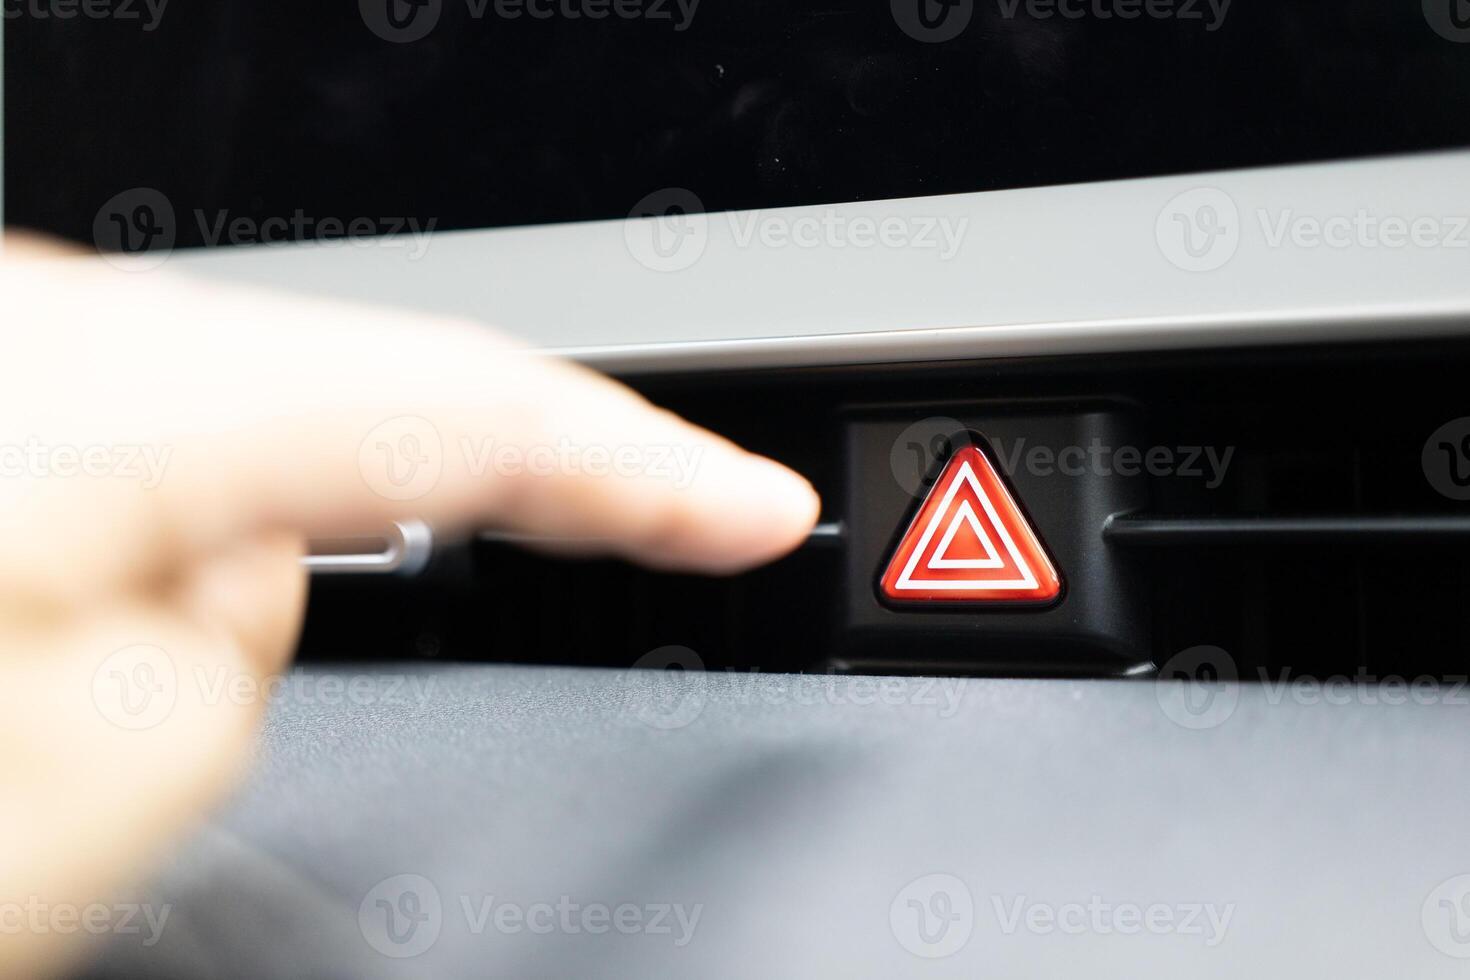 prensas a emergência Pare botão dentro a carro. carro emergência Atenção luz botão dentro frente carro console foto